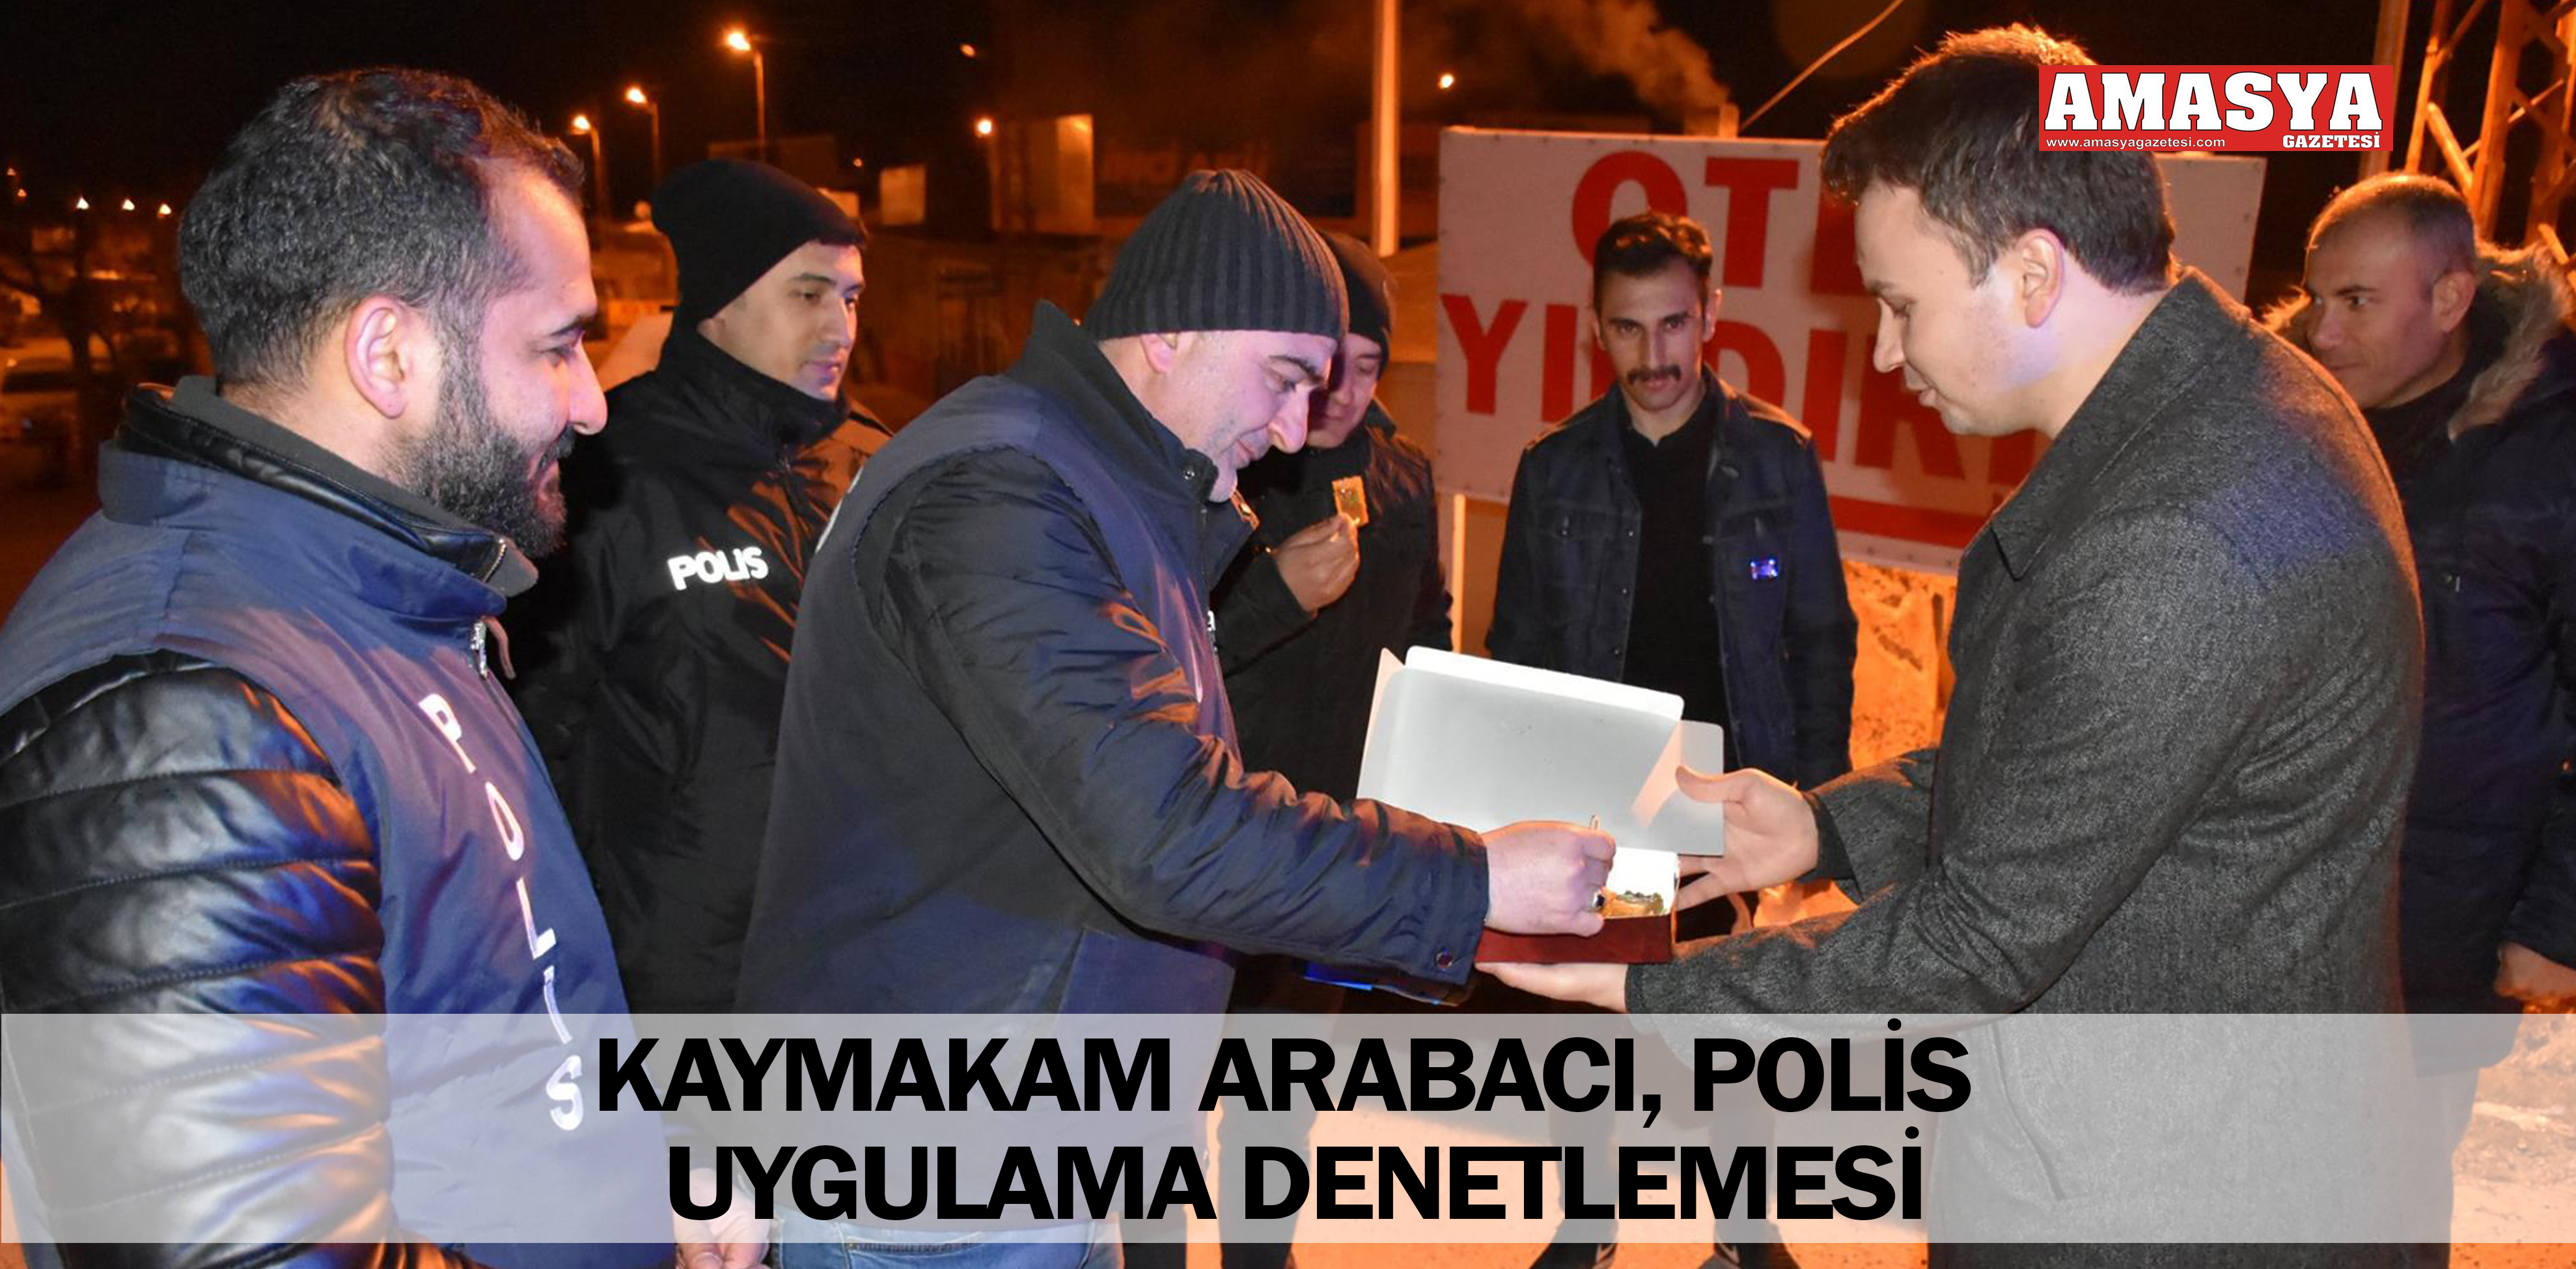 KAYMAKAM ARABACI, POLİS UYGULAMA DENETLEMESİ